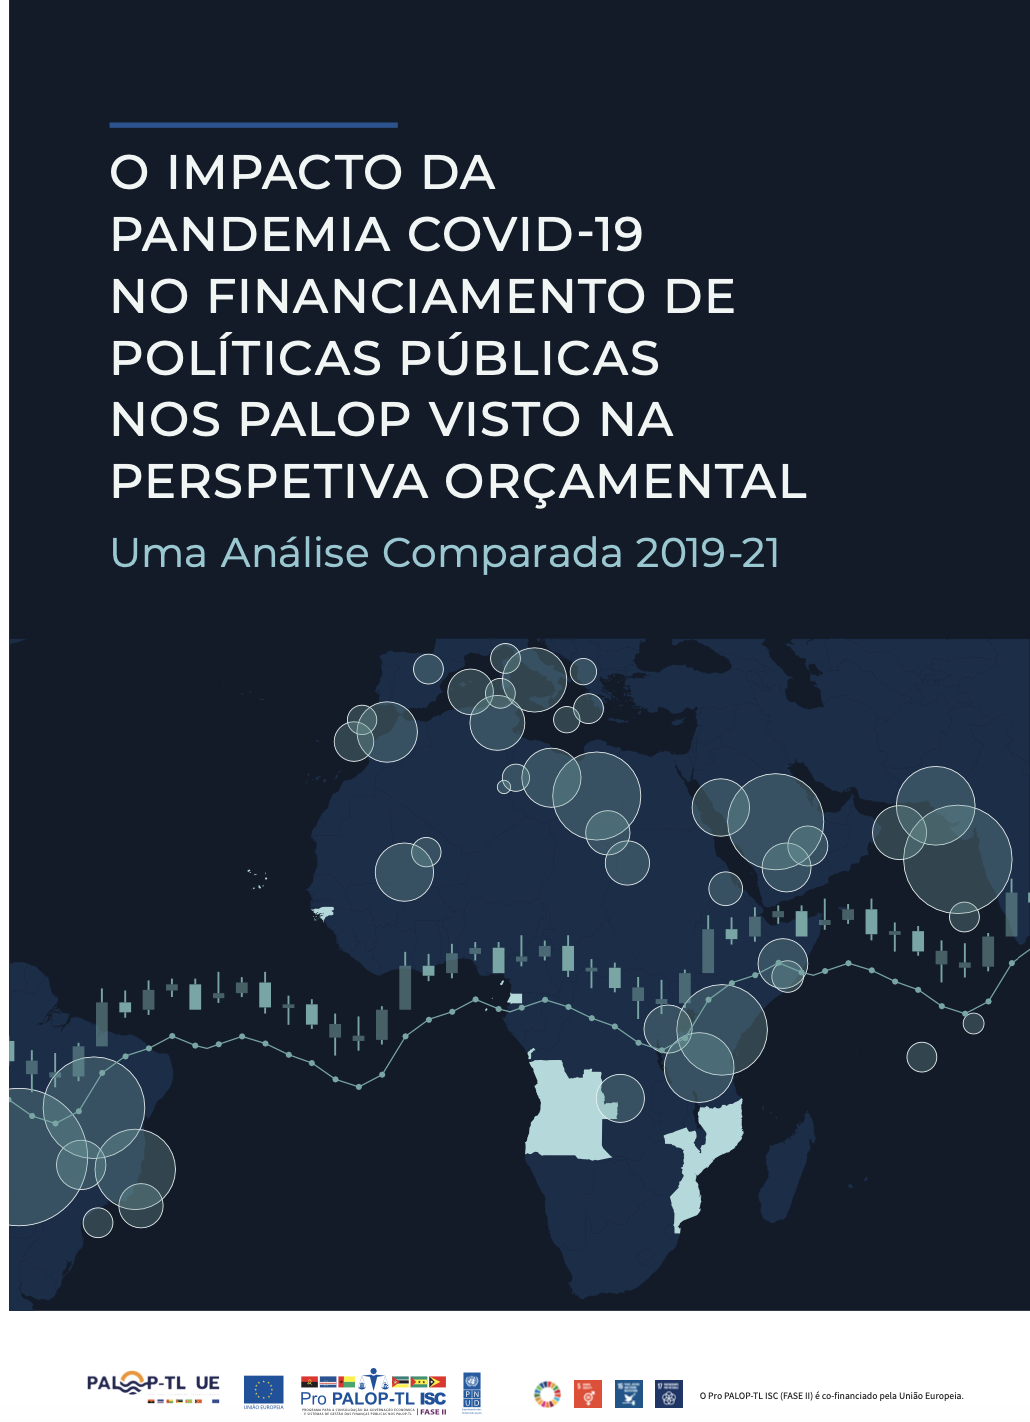 O impacto da pandemia COVID-19 no financiamento das políticas públicas nos PALOP - perspectiva orçamental (2019-2021)